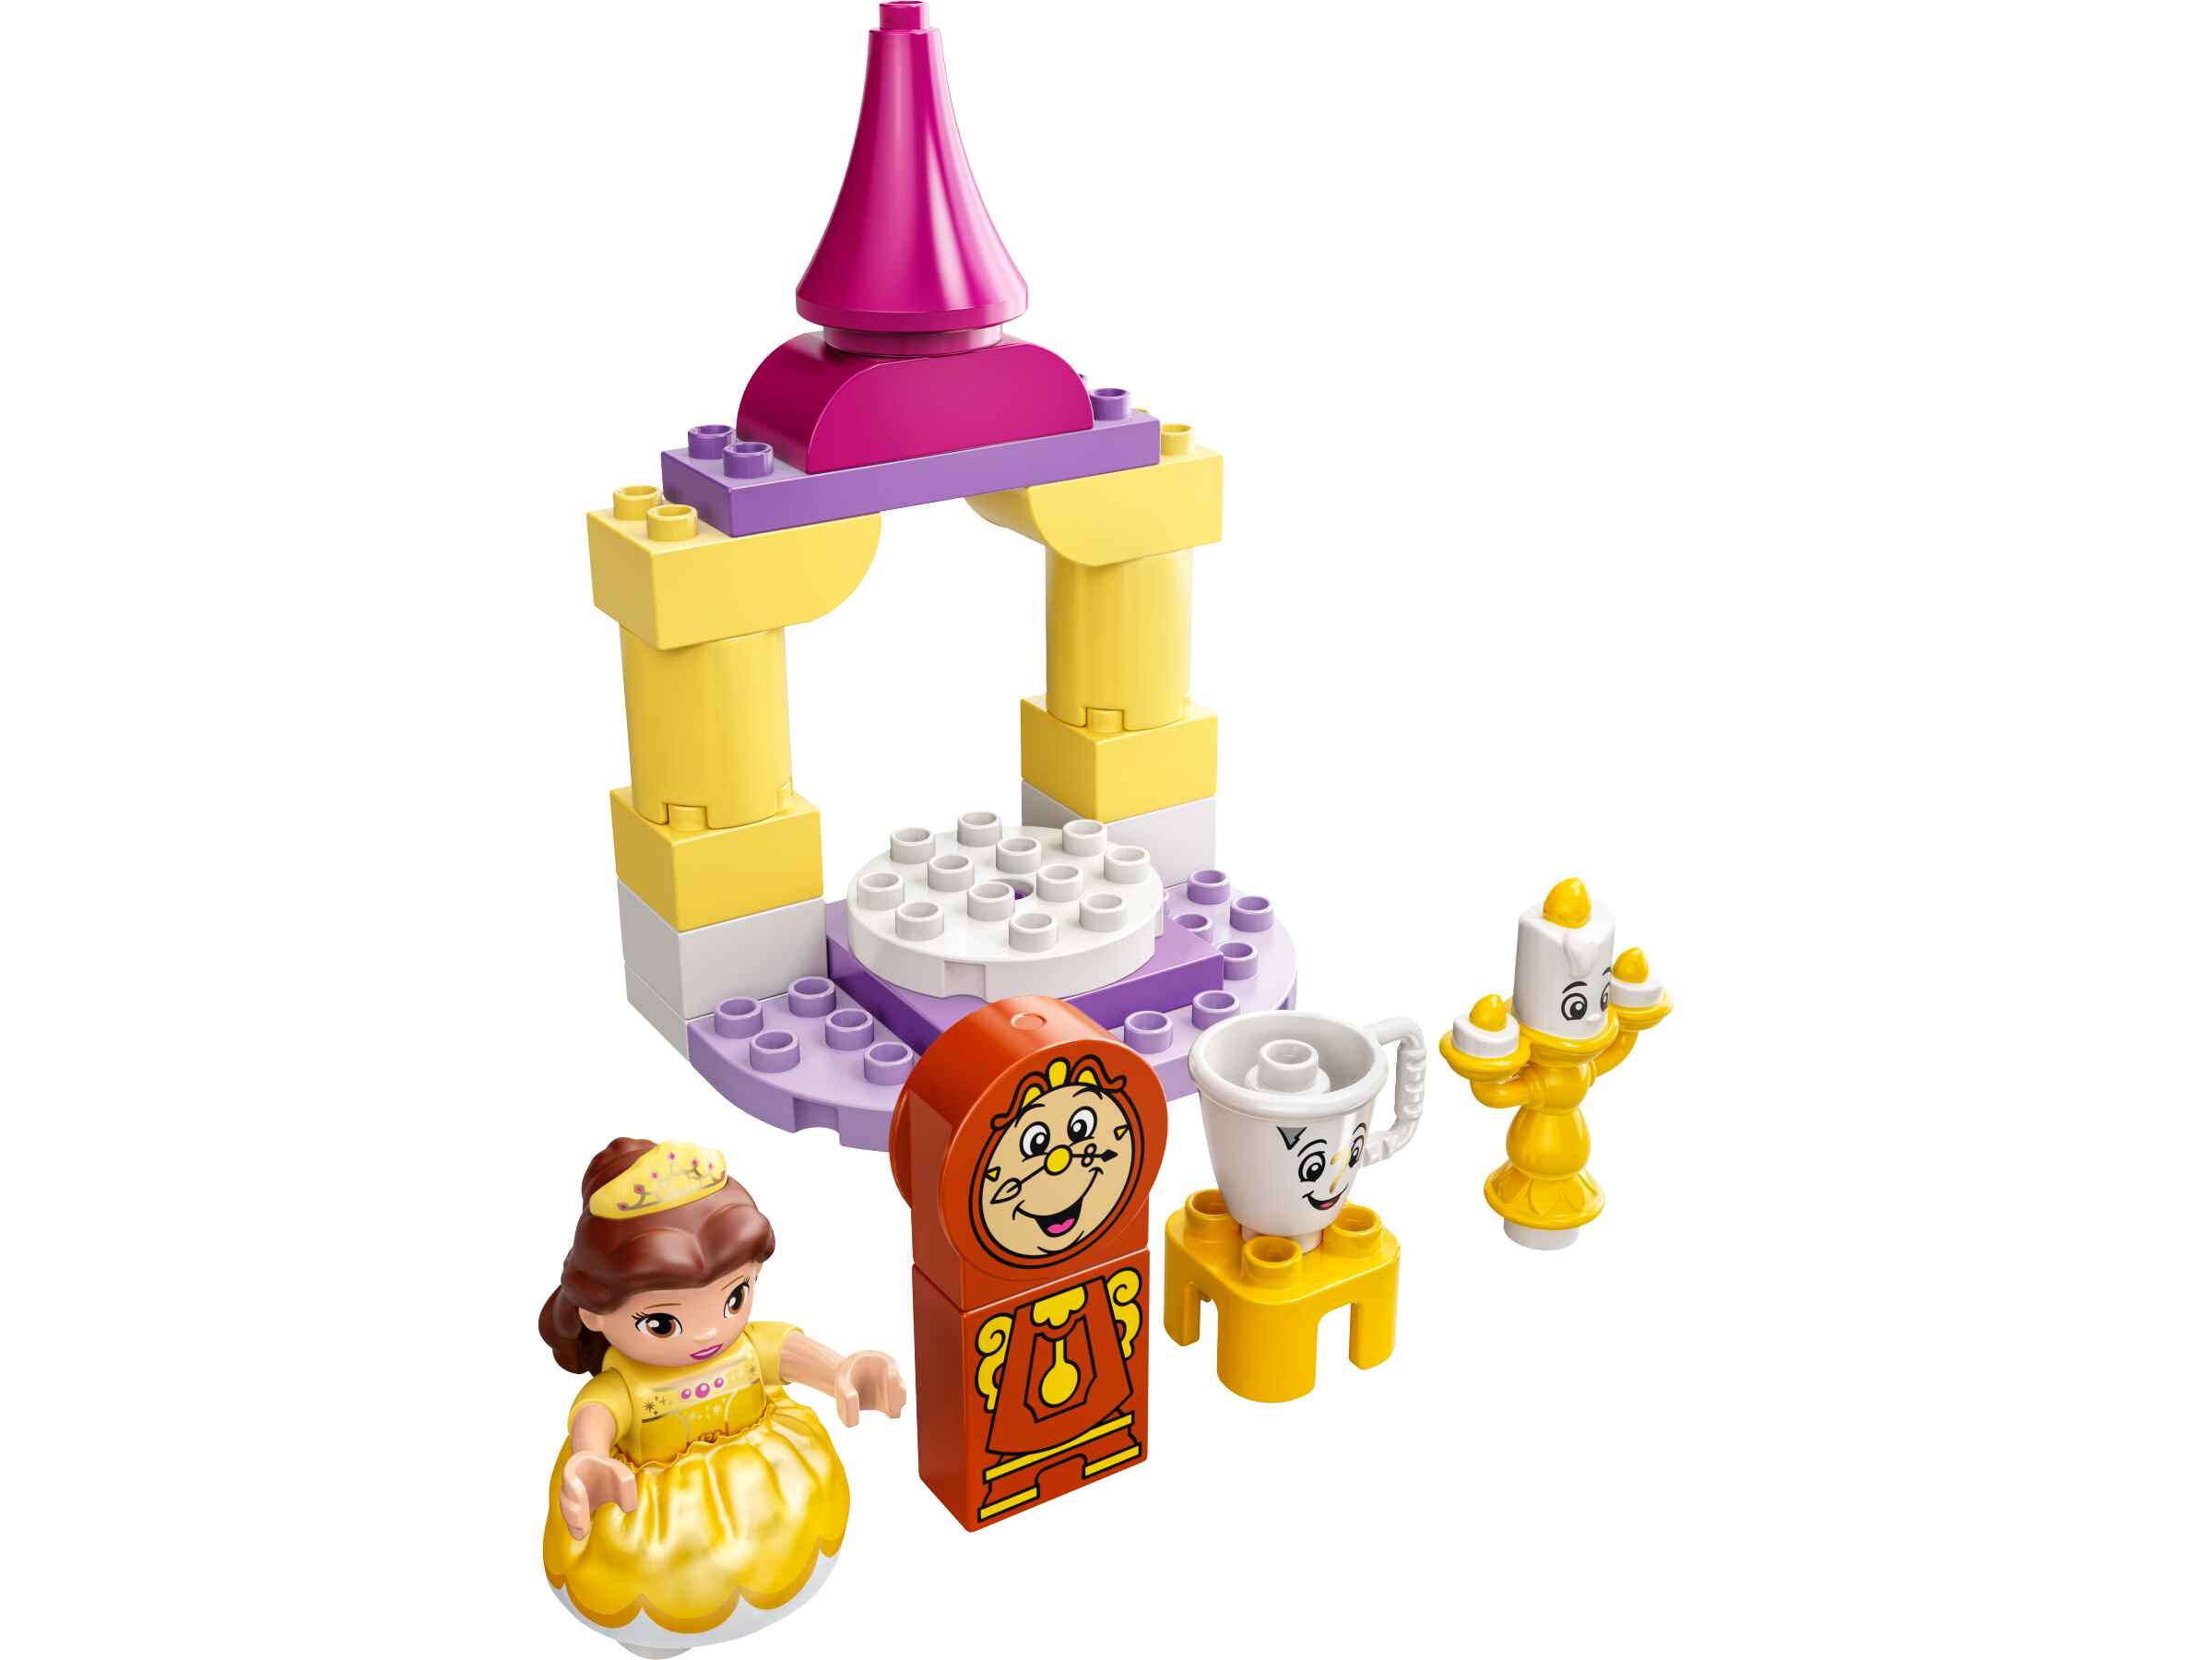 LEGO 10960 DUPLO Belles Ballsaal, Die Schöne und das Biest, Schloss u Prinzessin